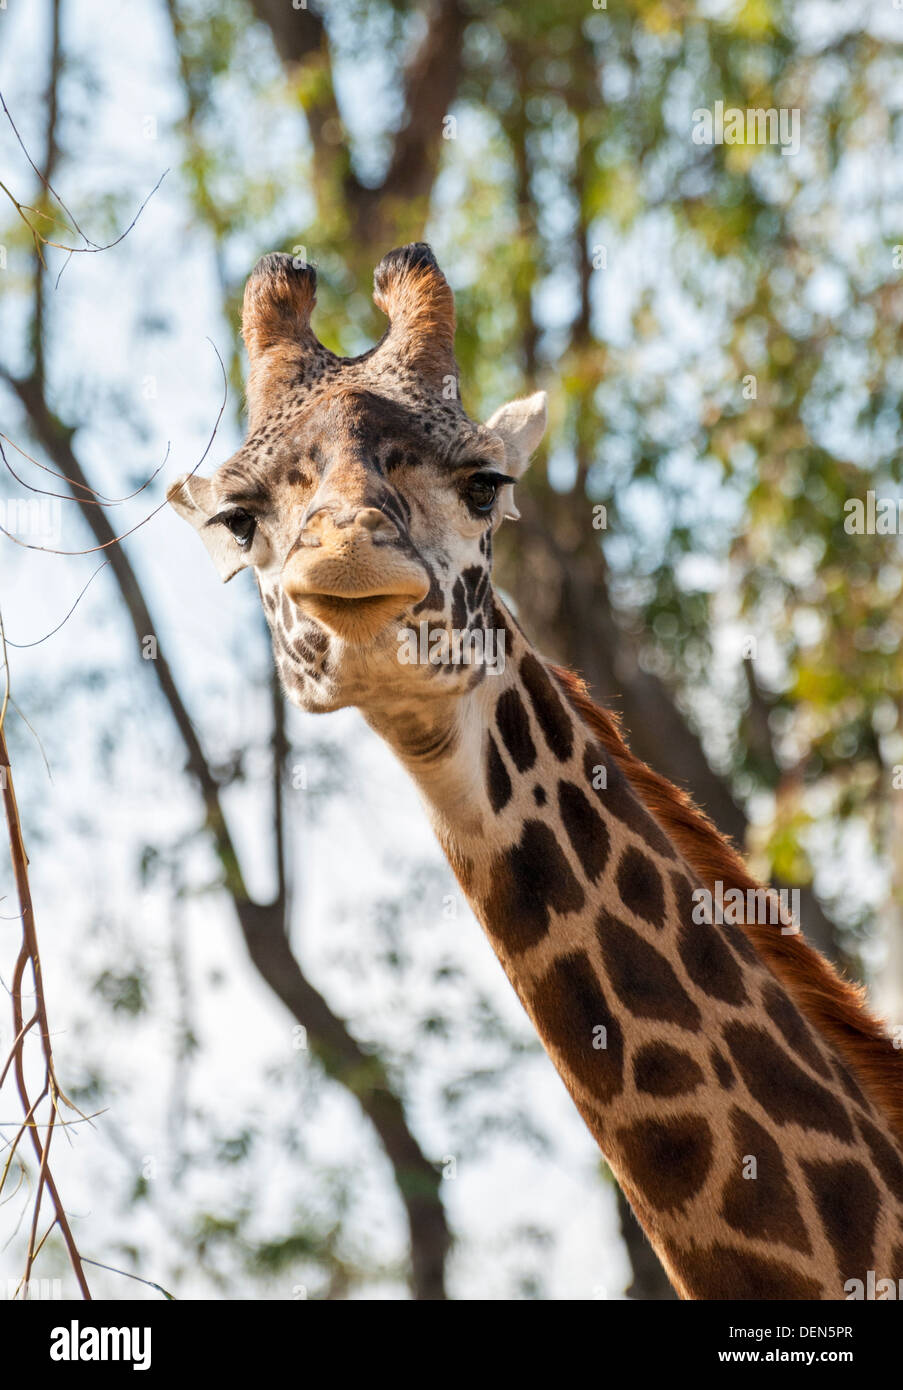 California, San Diego Zoo, giraffe (Giraffa camelopardais) Stock Photo